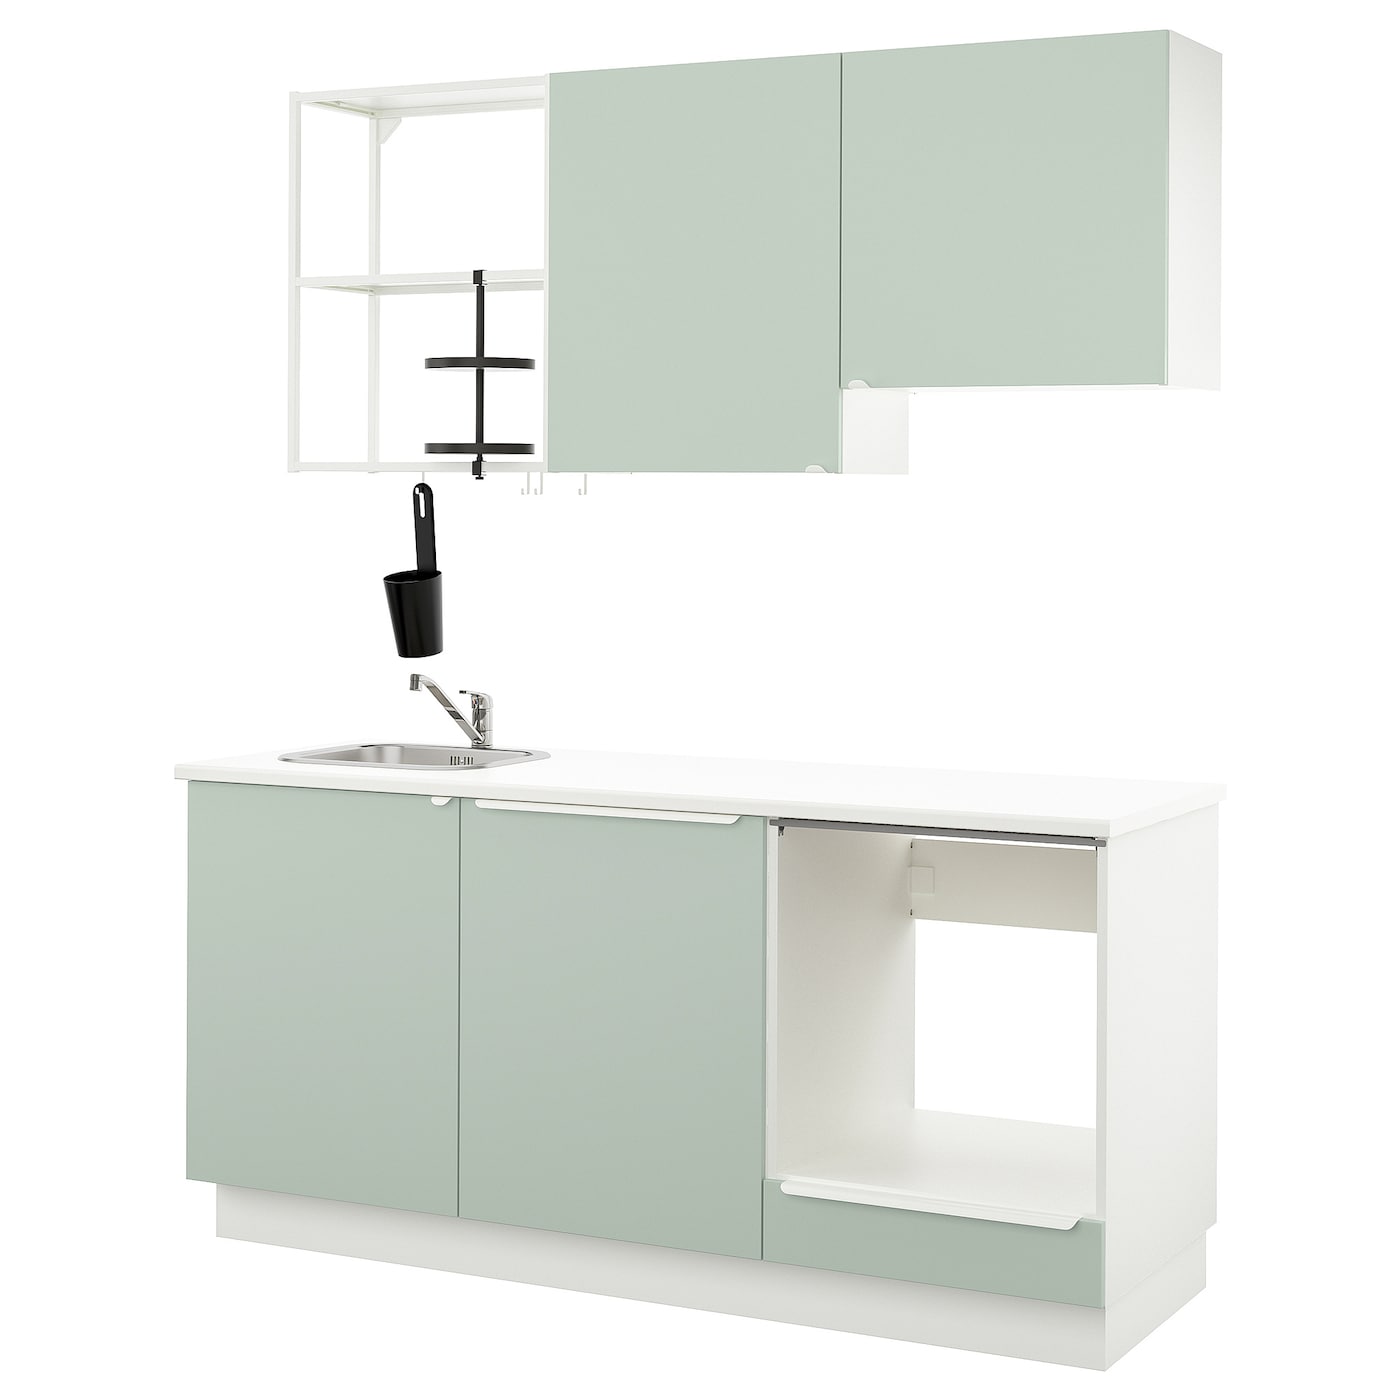 Кухня -  ENHET  IKEA/ ЭНХЕТ ИКЕА, 222х183  см, белый/зеленый